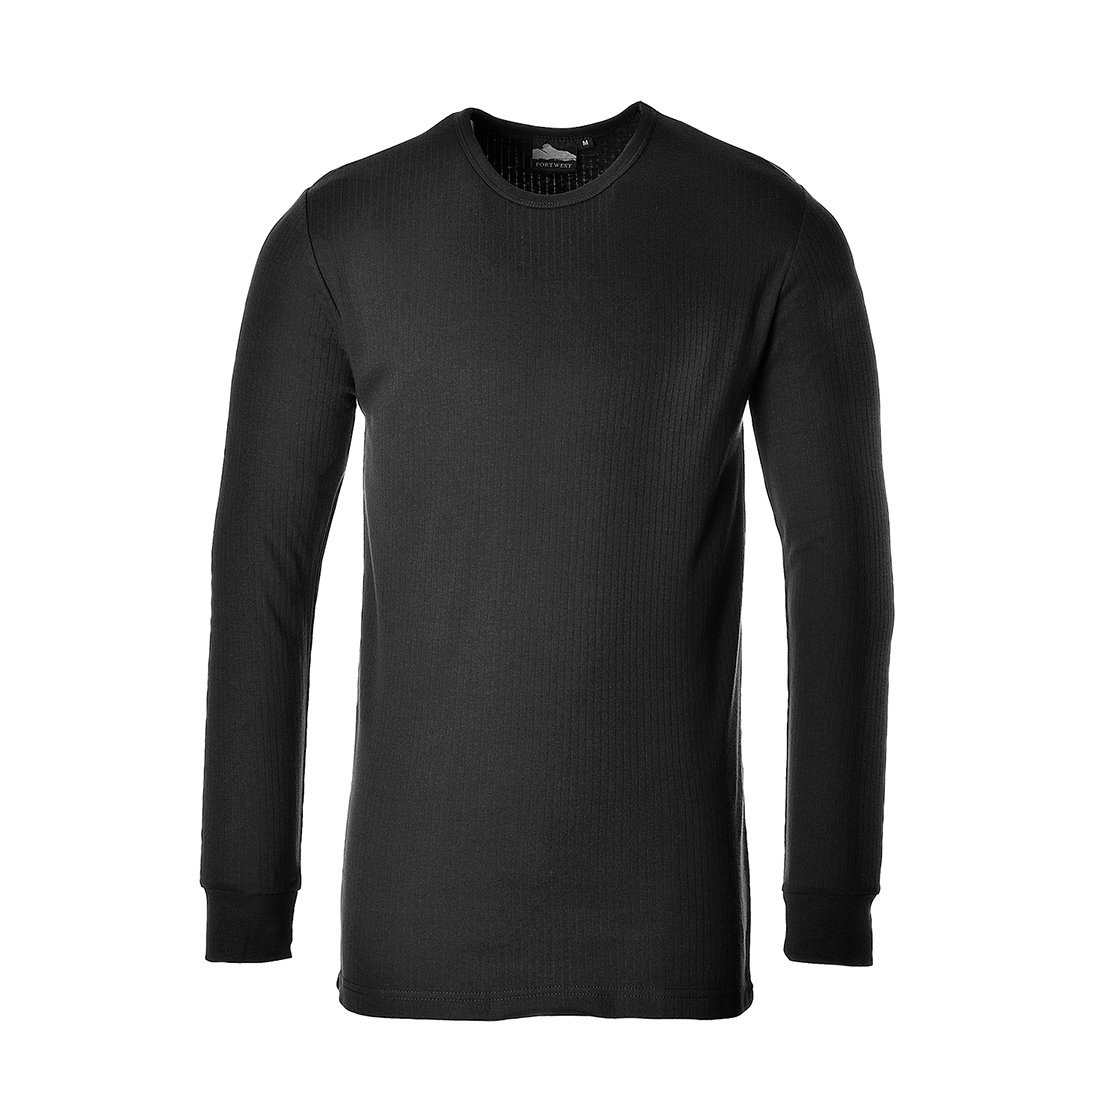 Exemplo de imagem da camisa térmica de manga comprida B123 na cor preta com link para o artigo.